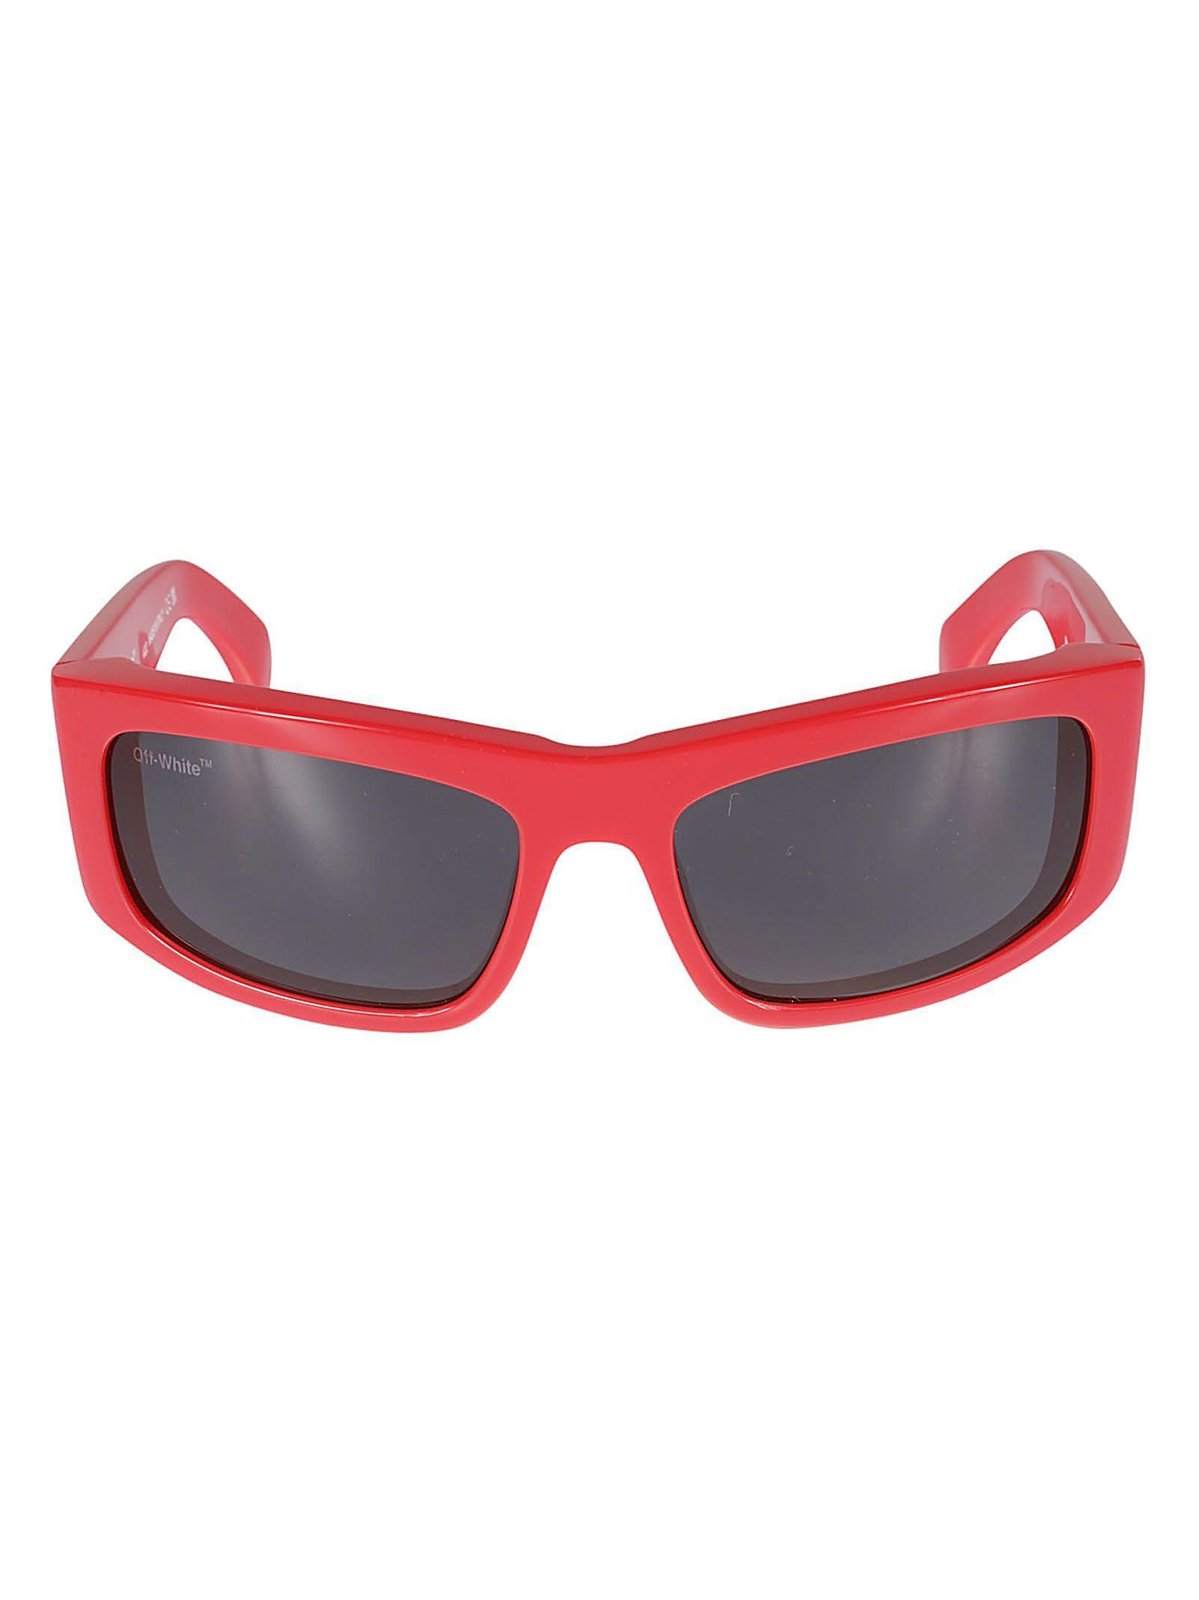 Off-White Joseph Rectangular Frame Sunglasses